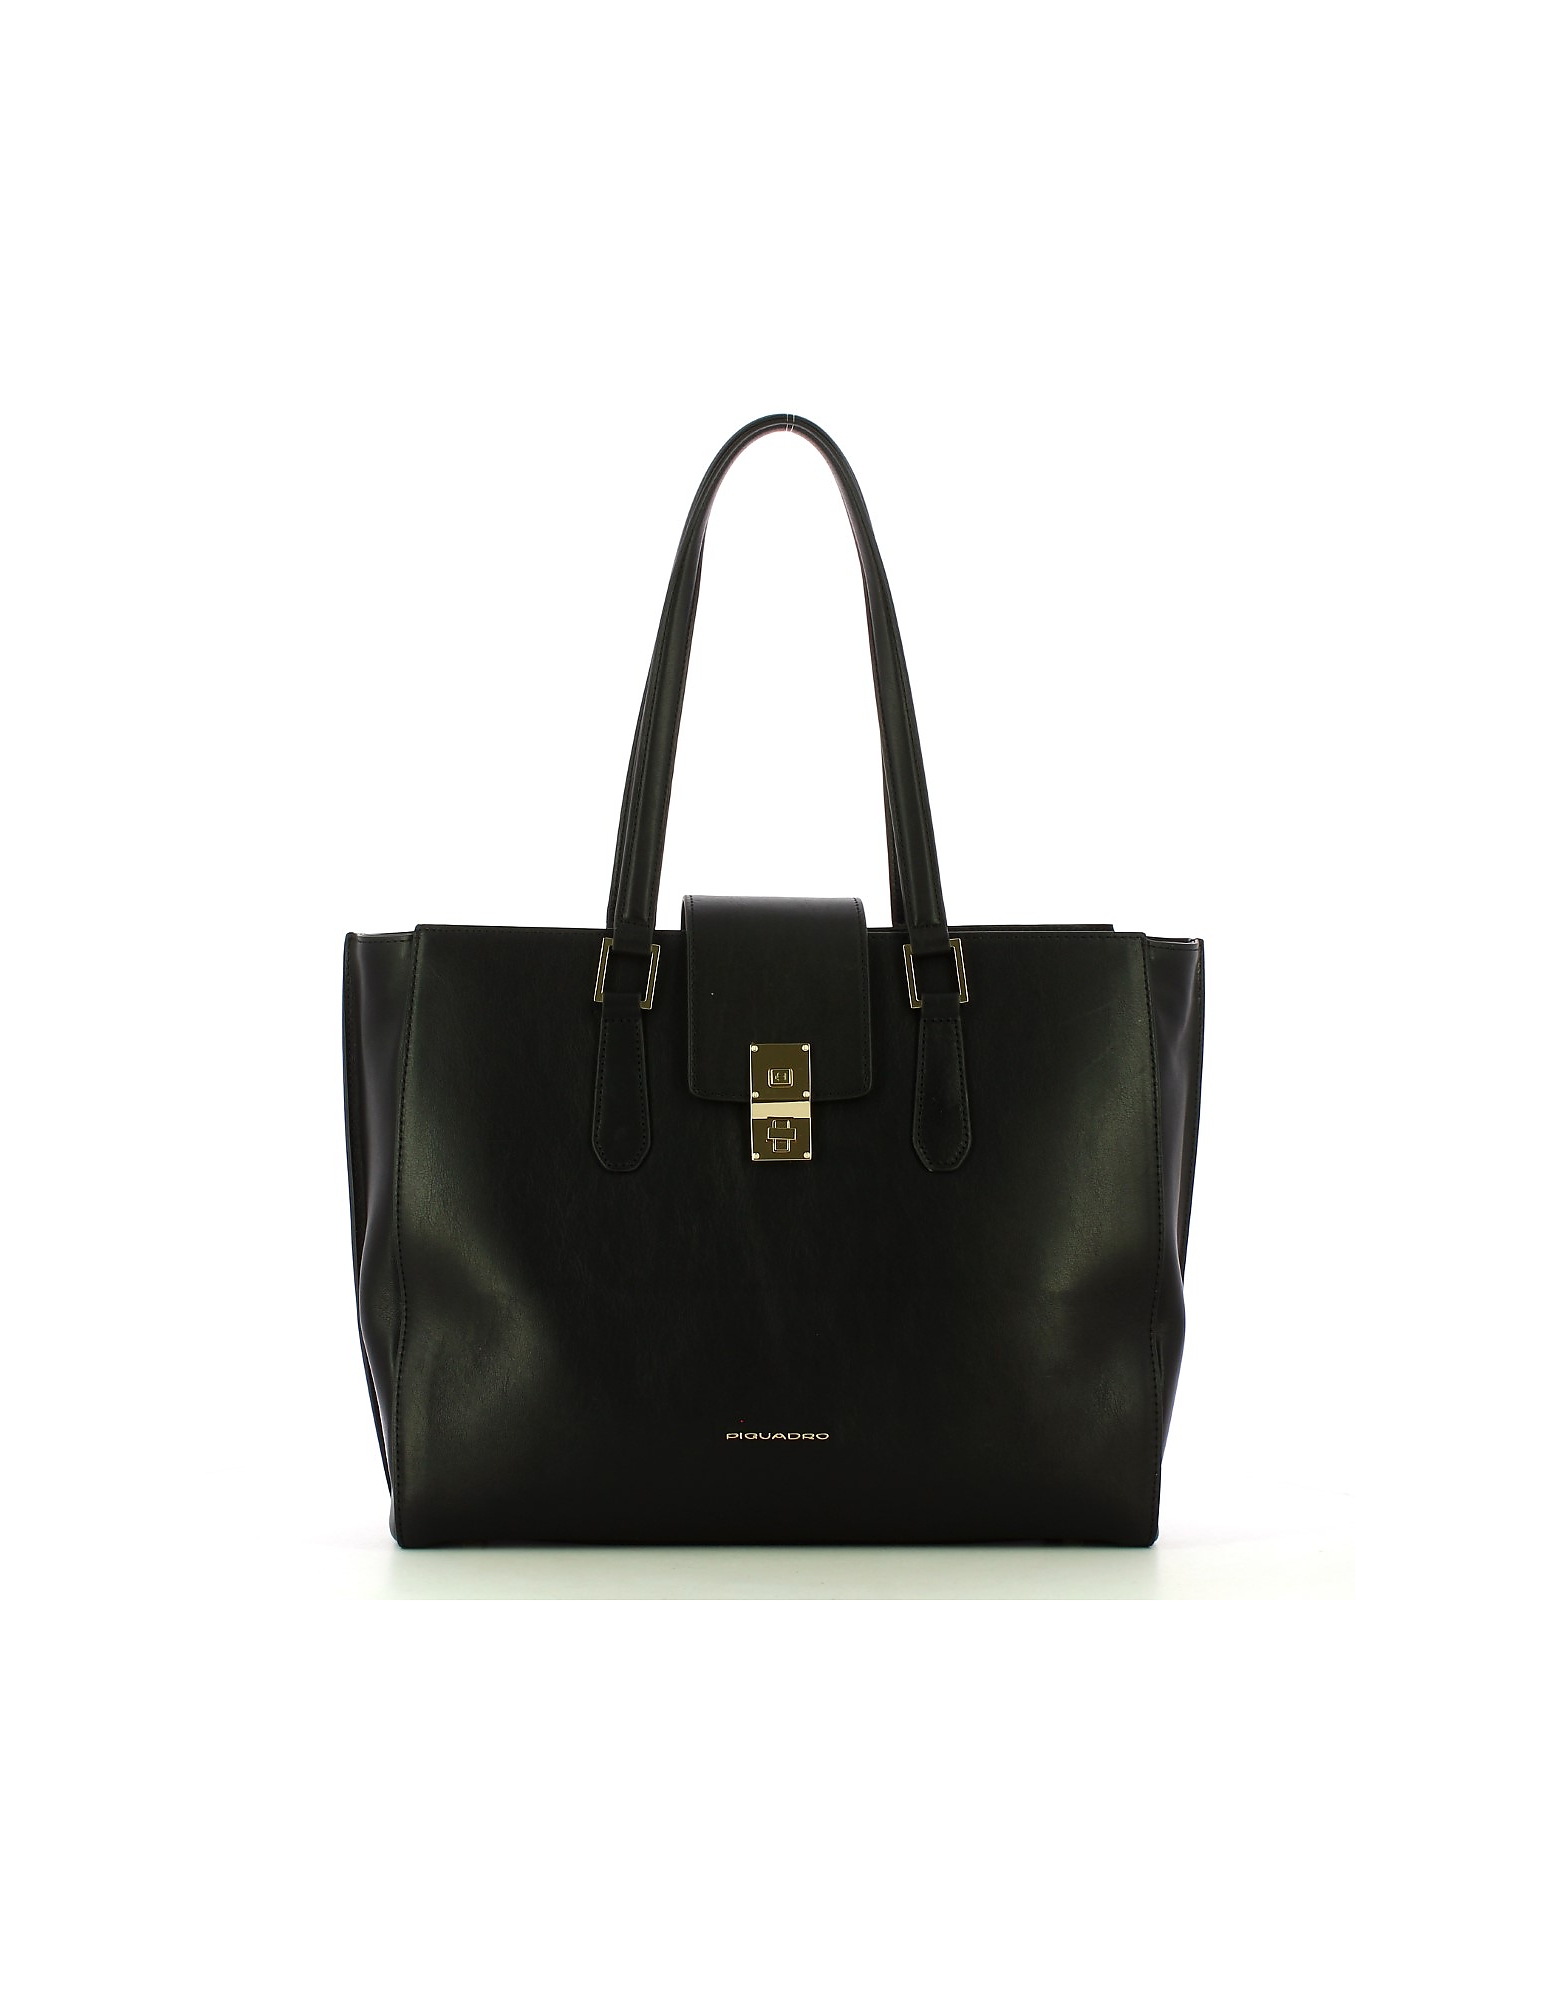 Piquadro Designer Handbags In Black